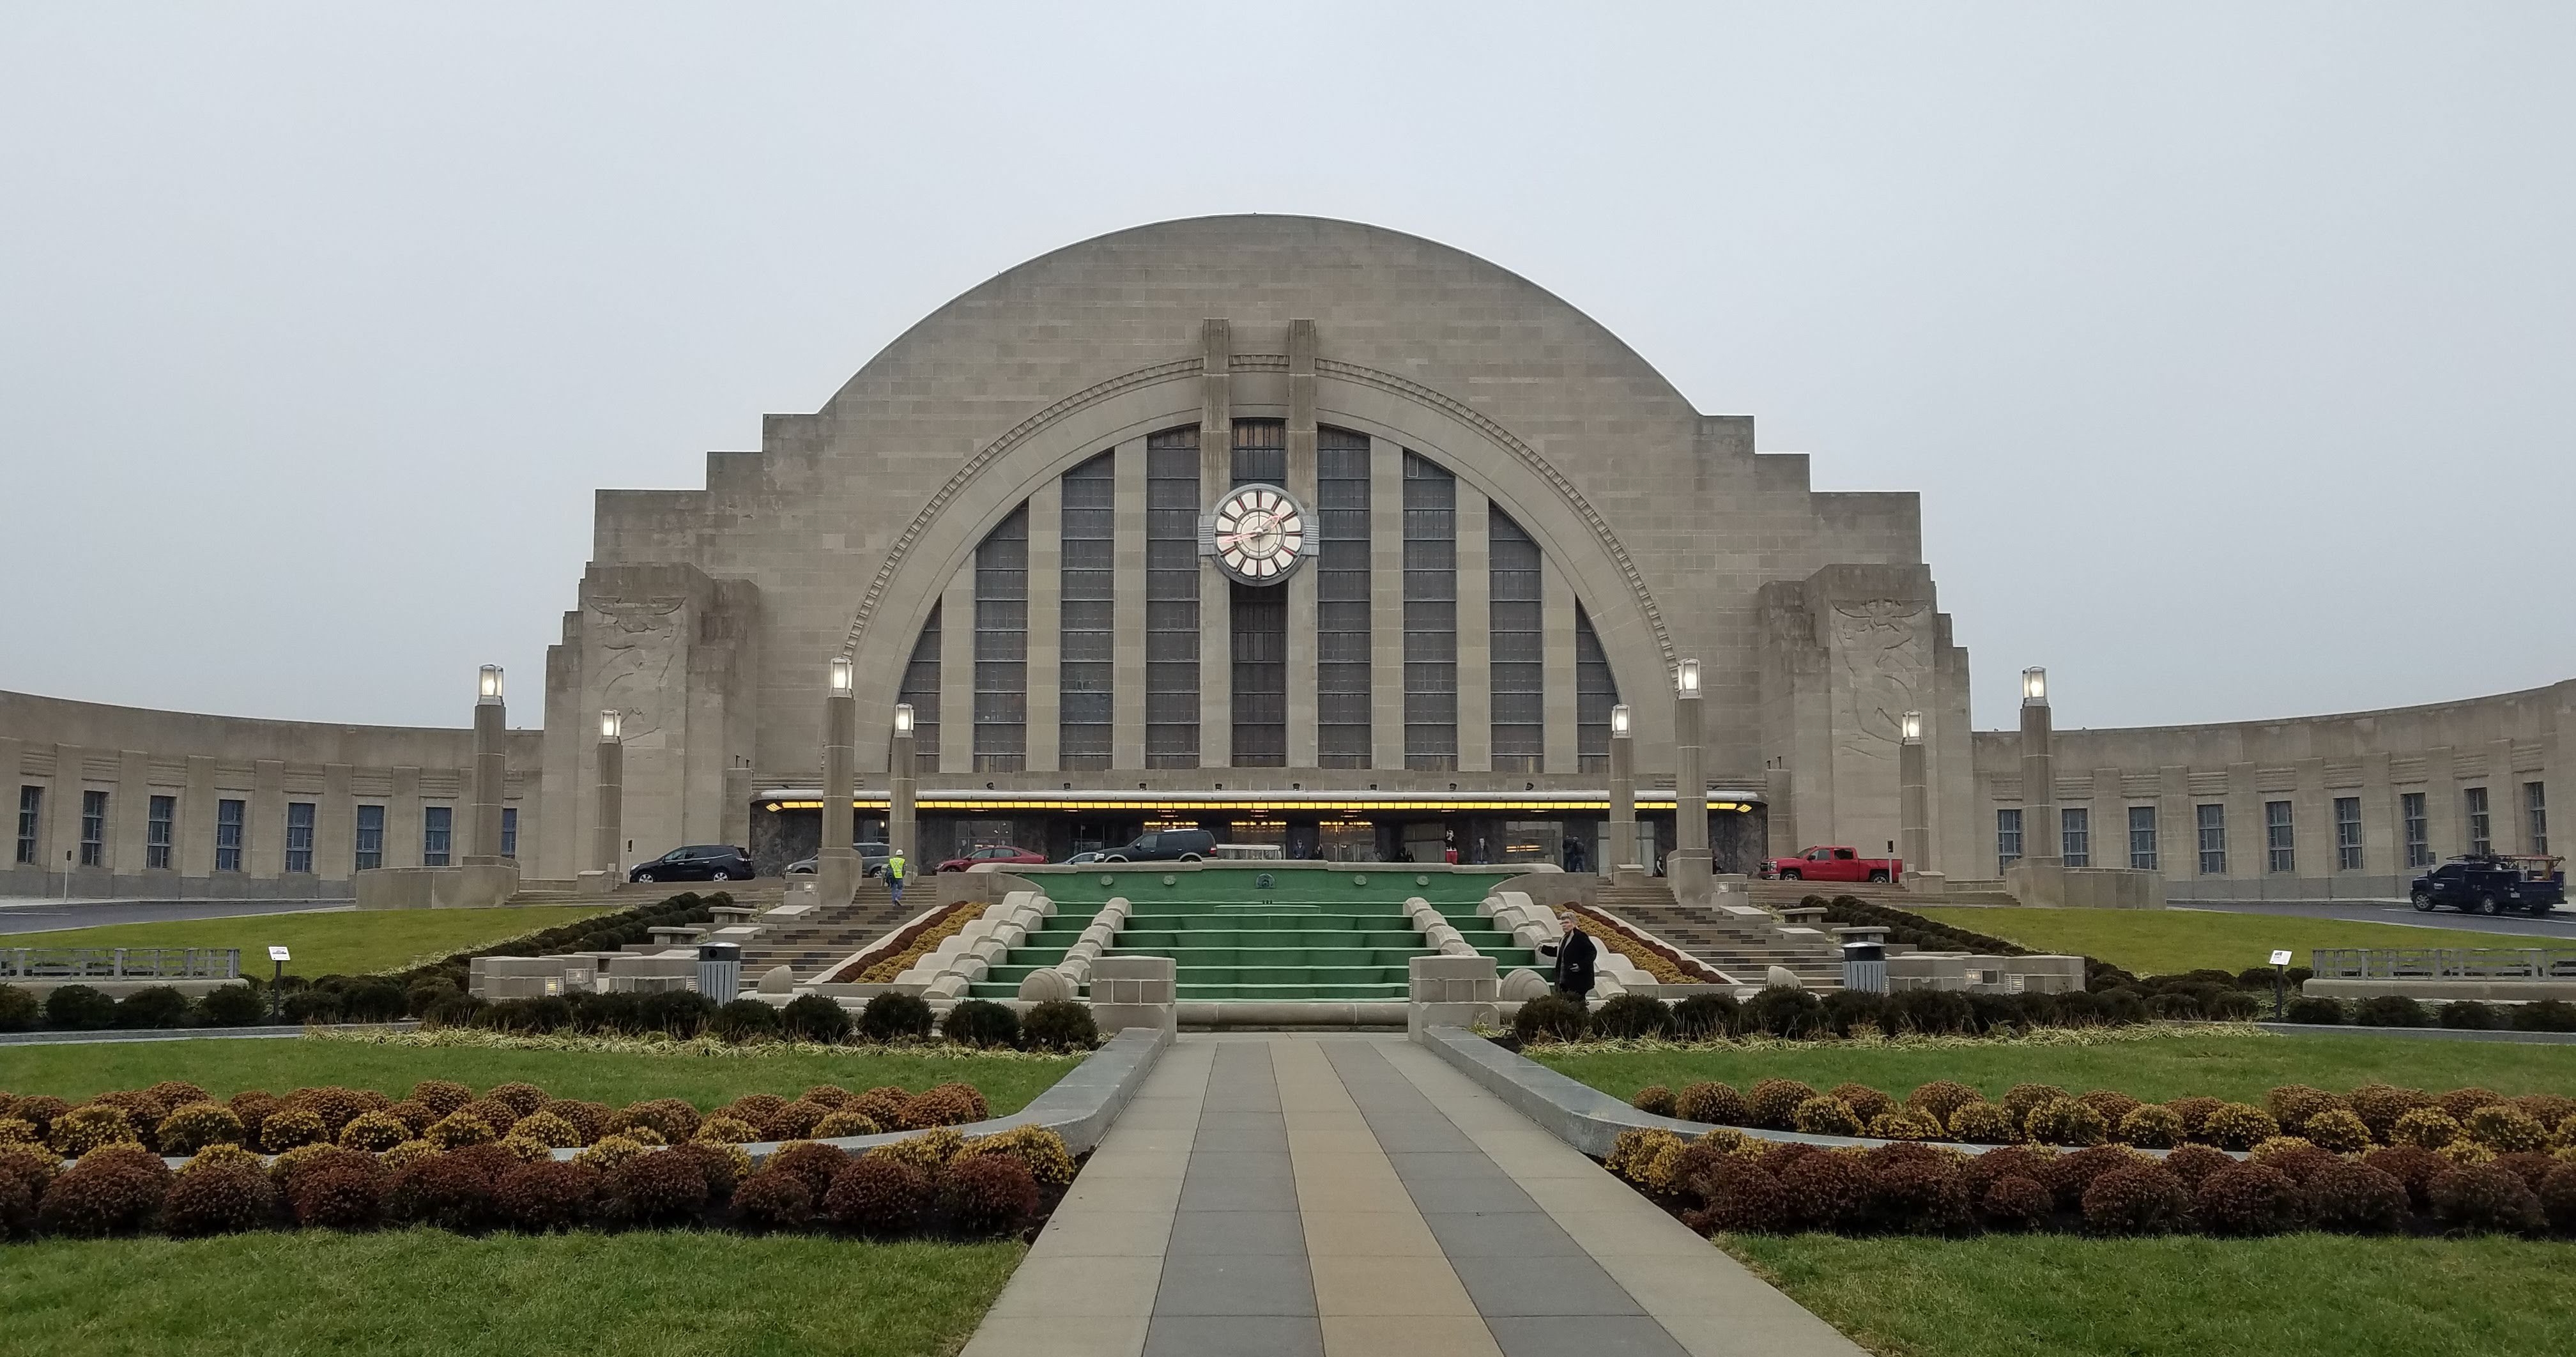 The Cincinnati Museum Center has re-opened!